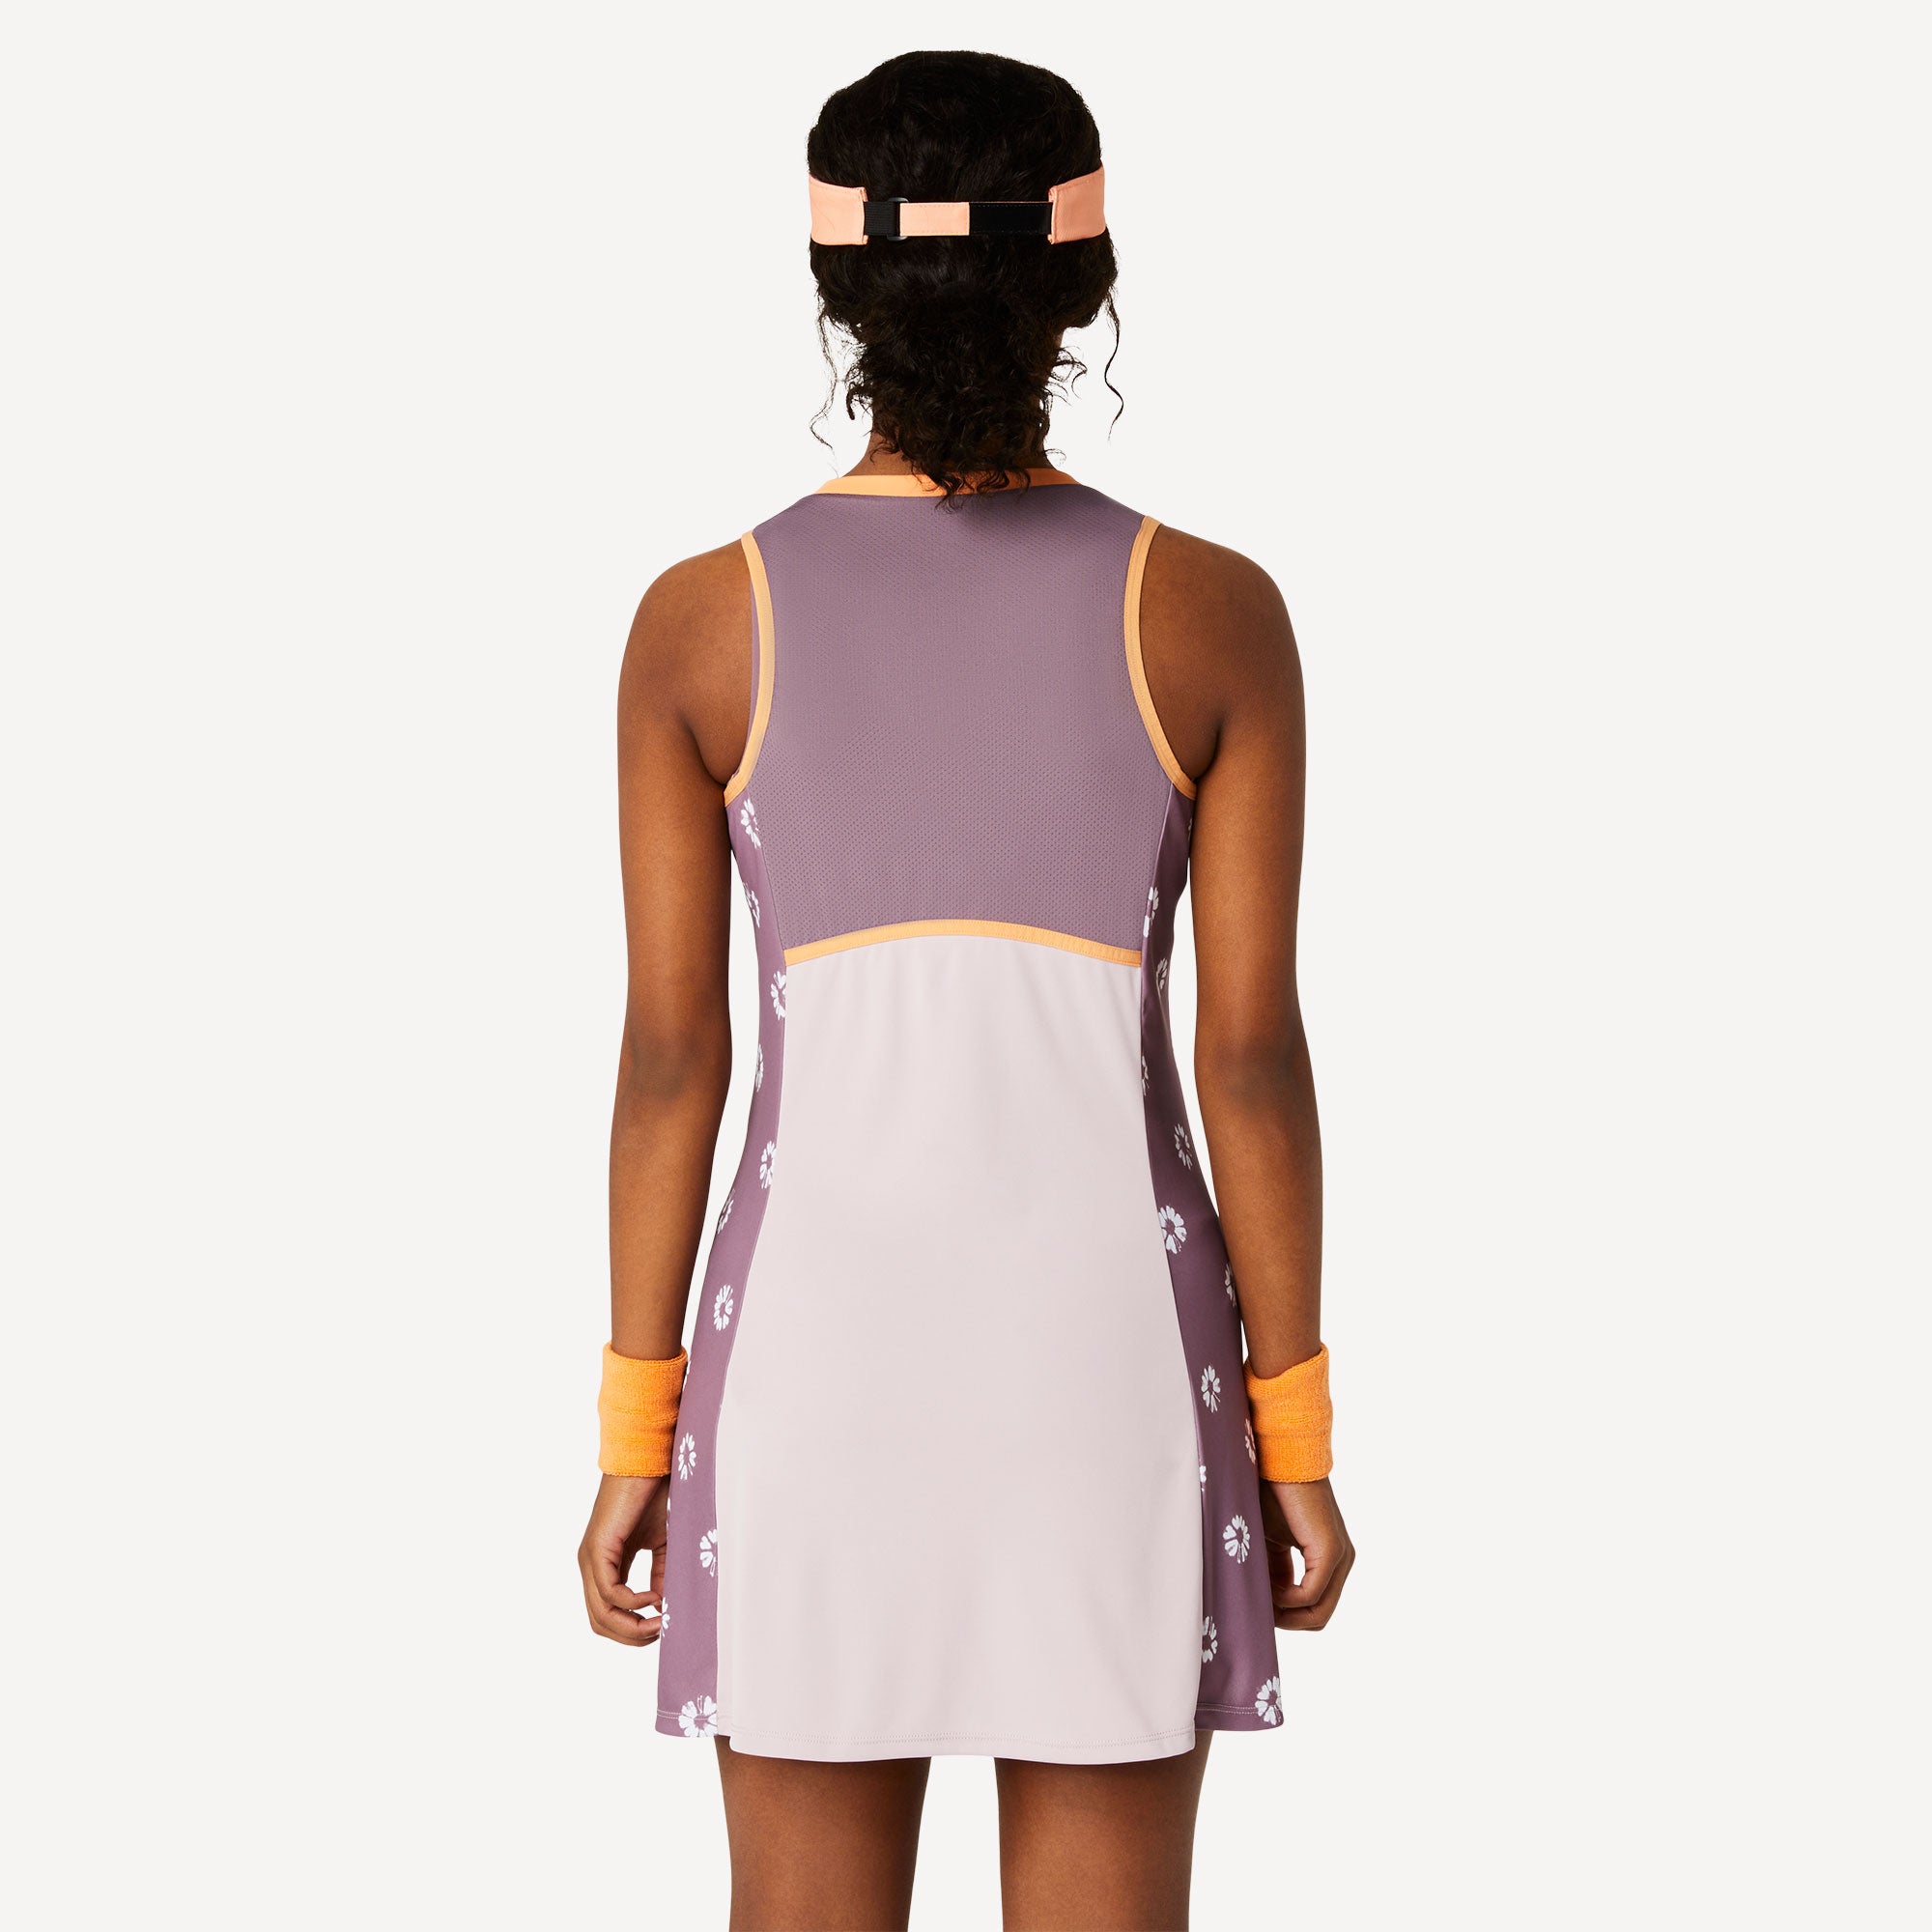 ASICS Match Women's Tennis Dress - Pink (2)